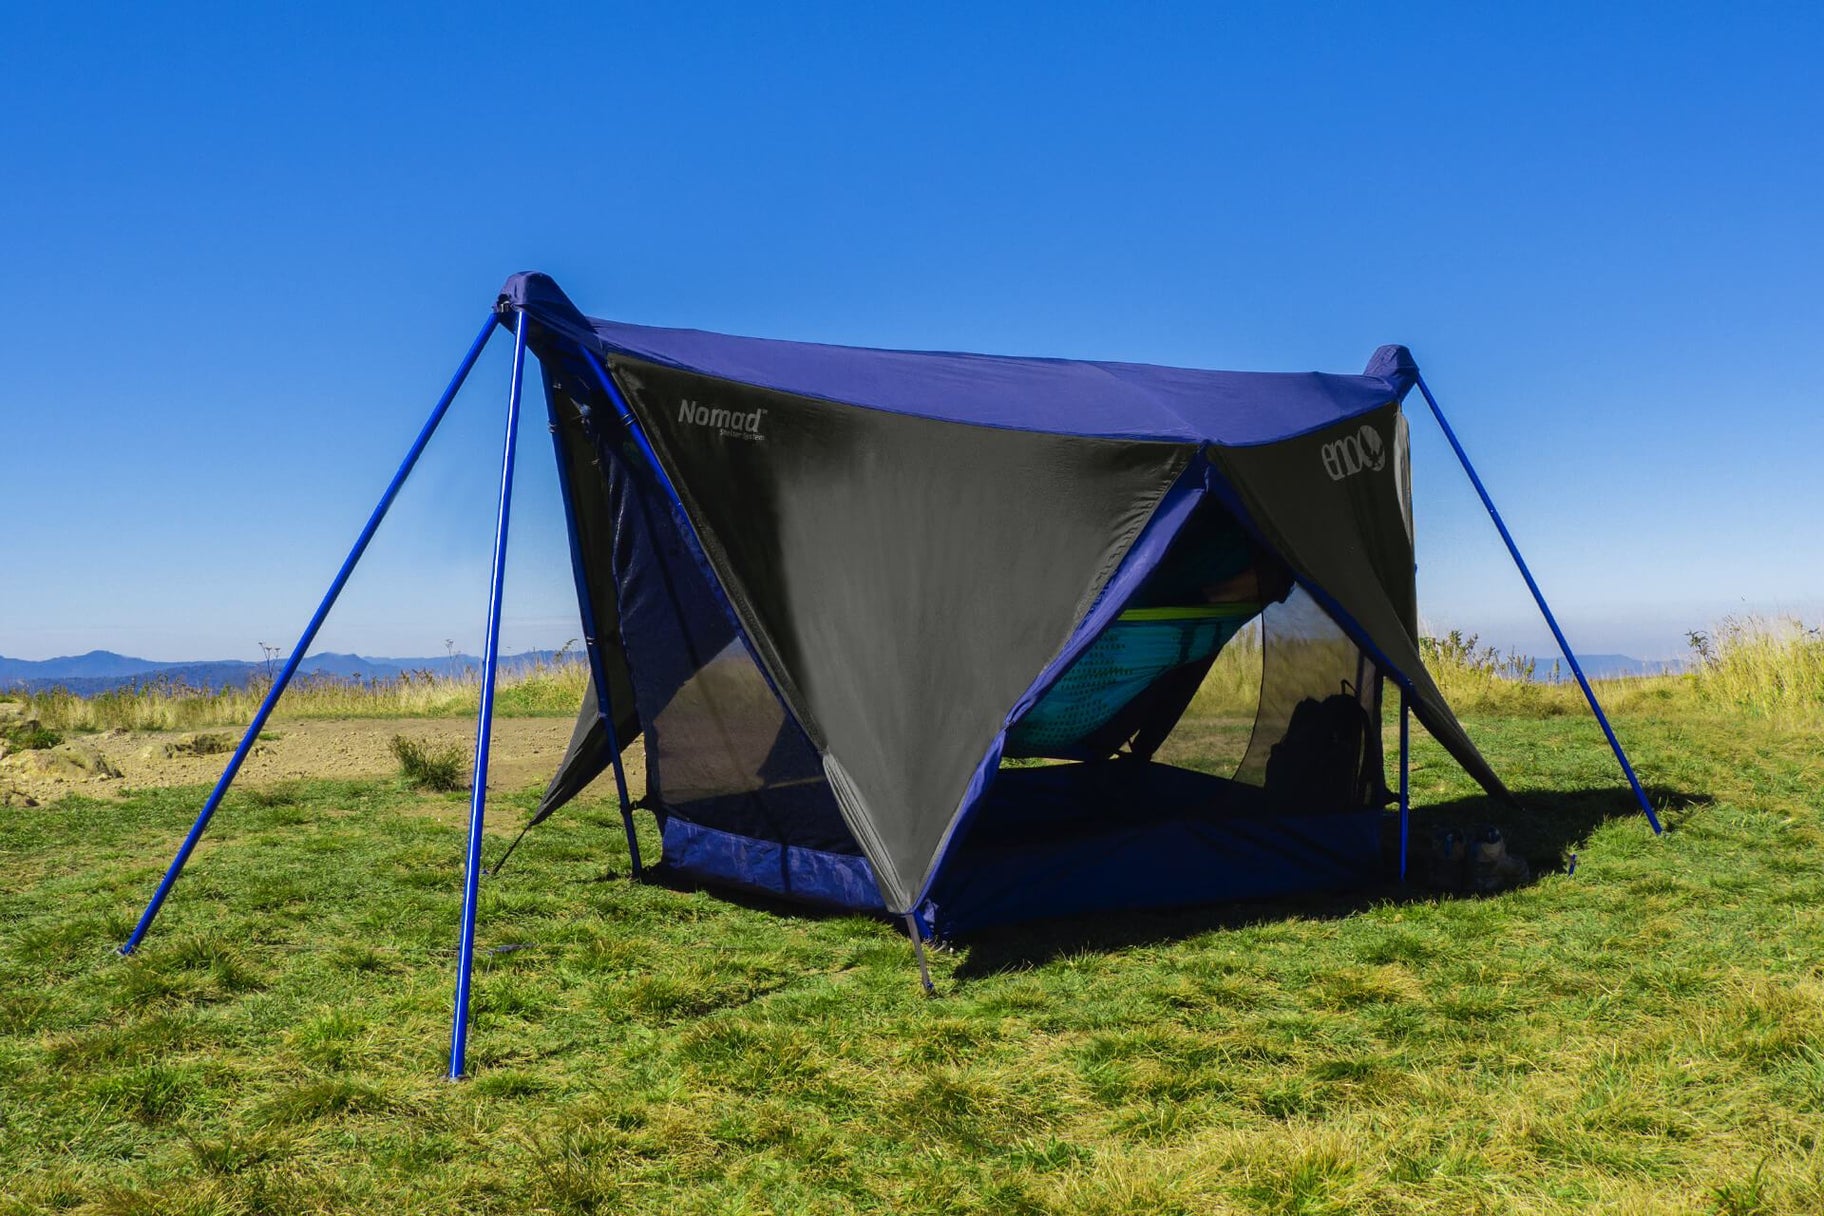 Nomad Shelter System - Made for Nomad Hammock | ENO